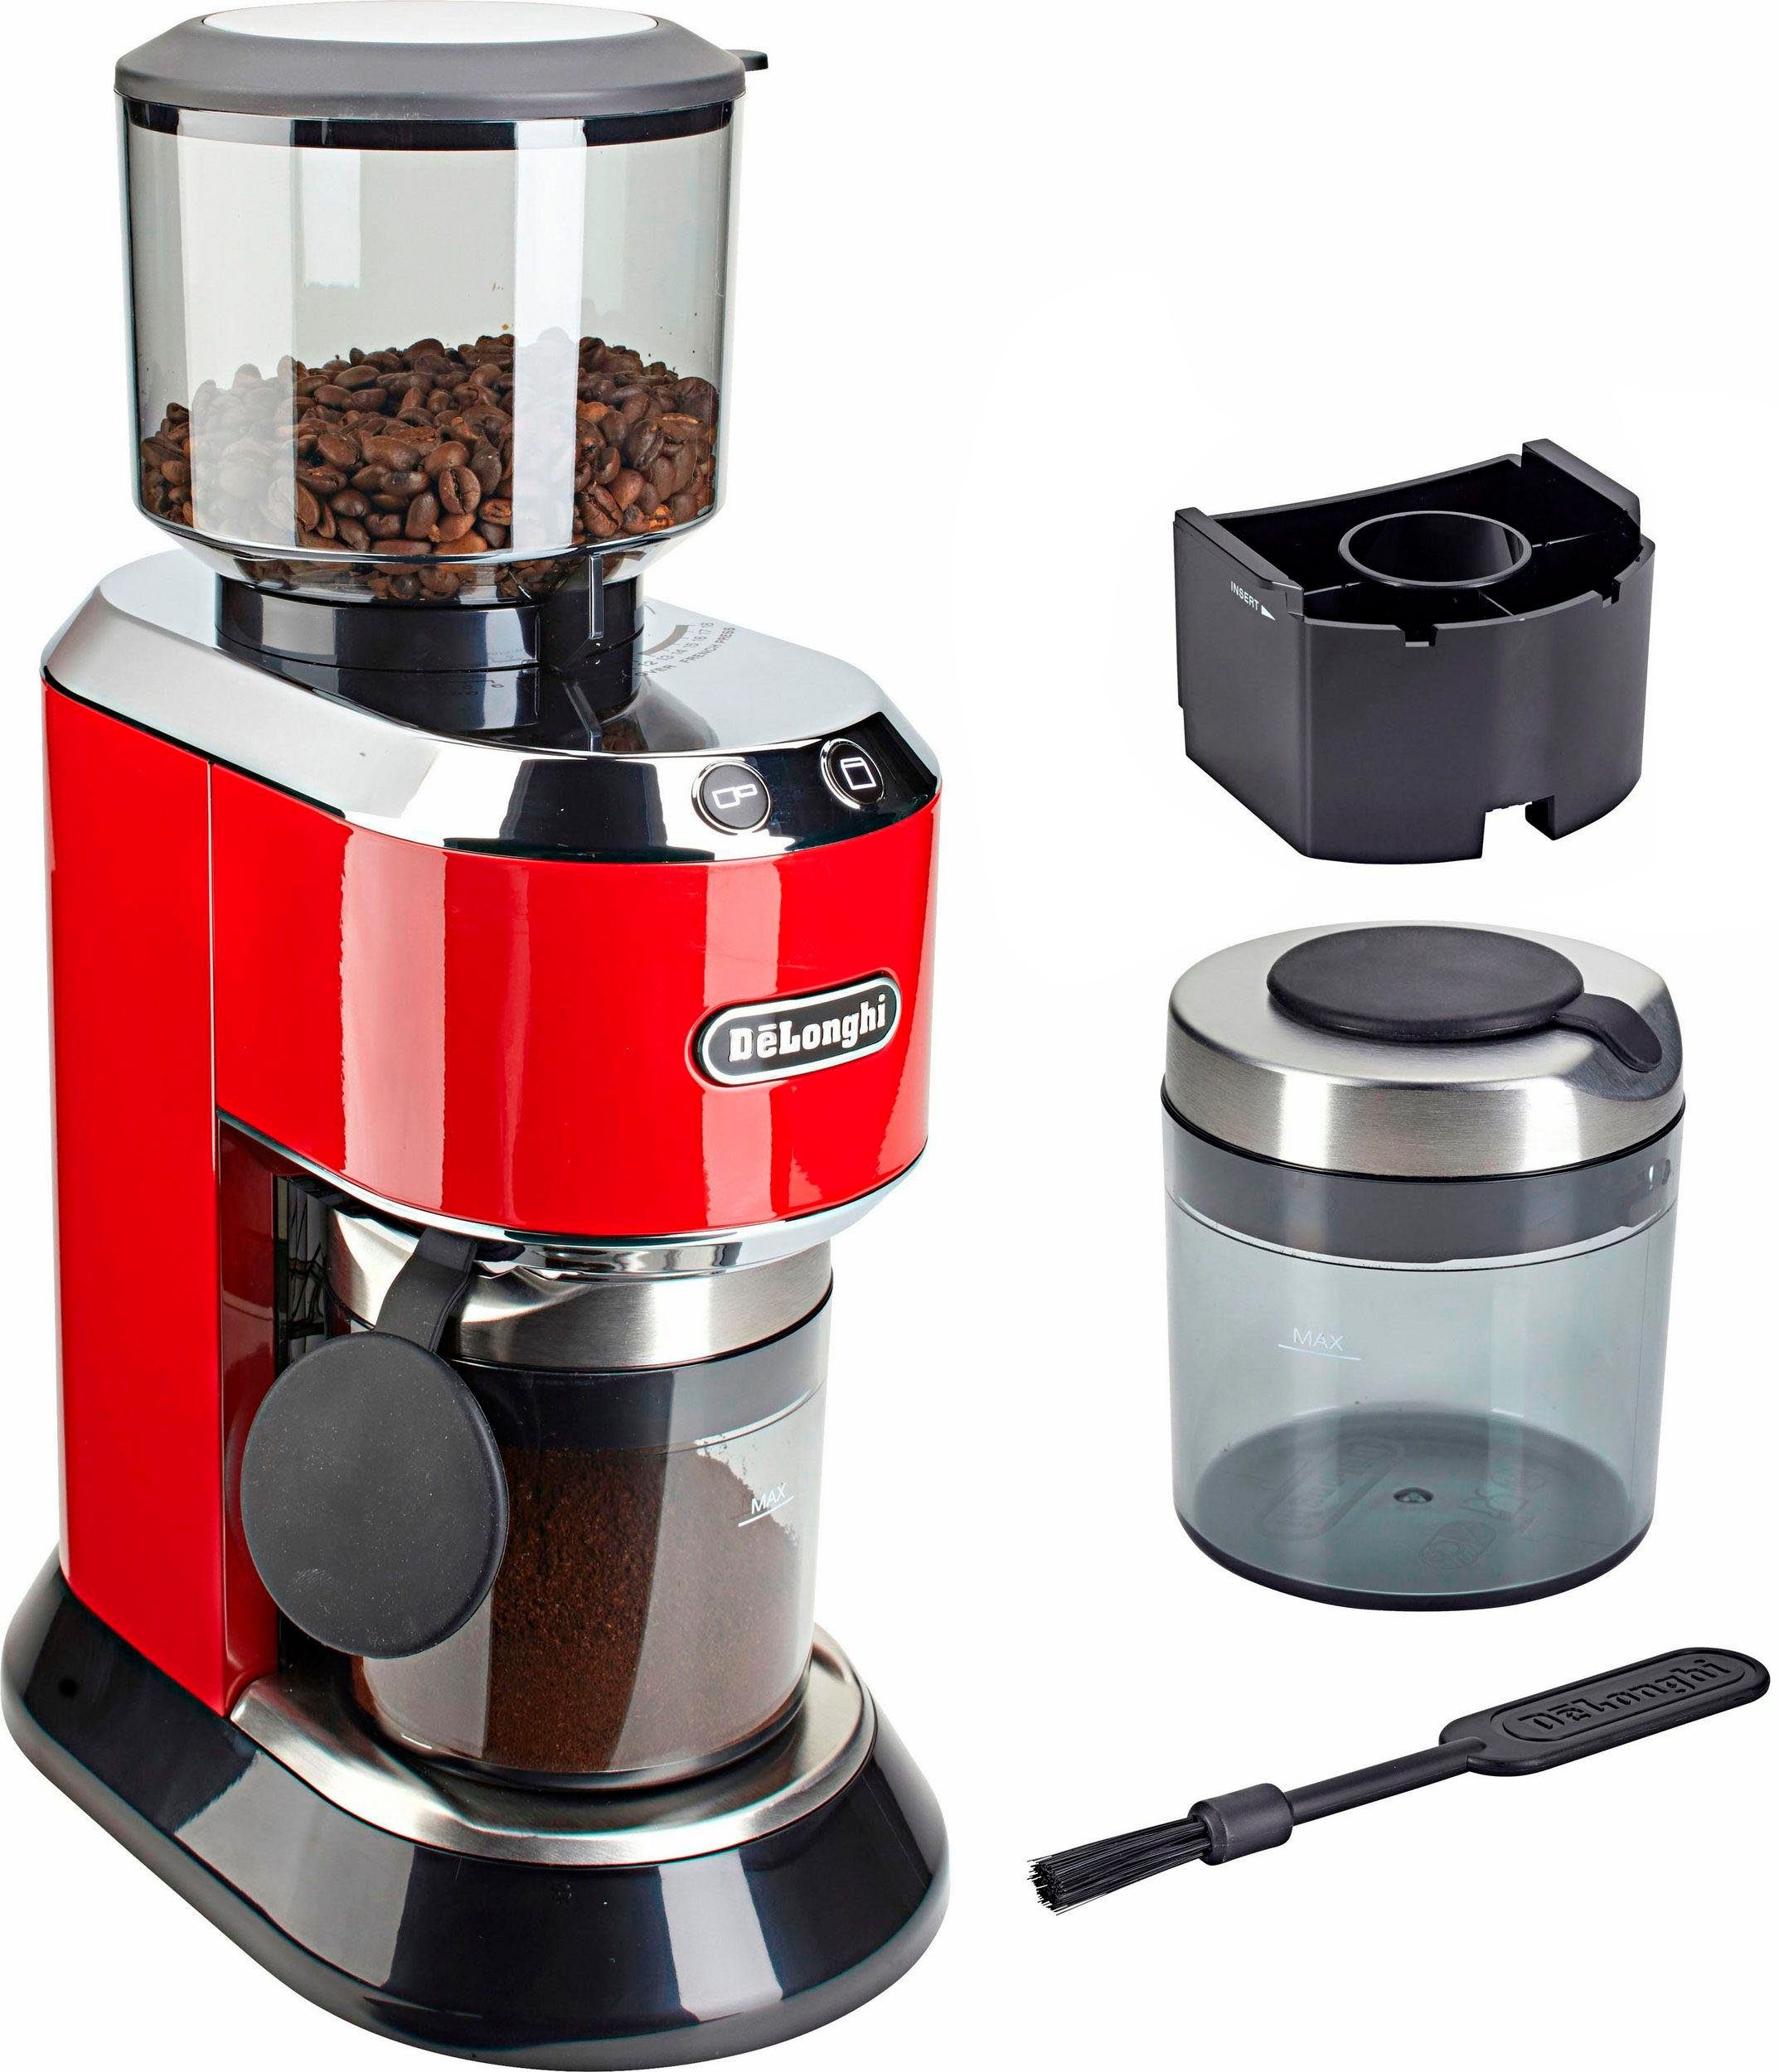 De'Longhi Kaffeemühle Dedica KG520.R, 150 W, Kegelmahlwerk, 350 g  Bohnenbehälter online kaufen | OTTO